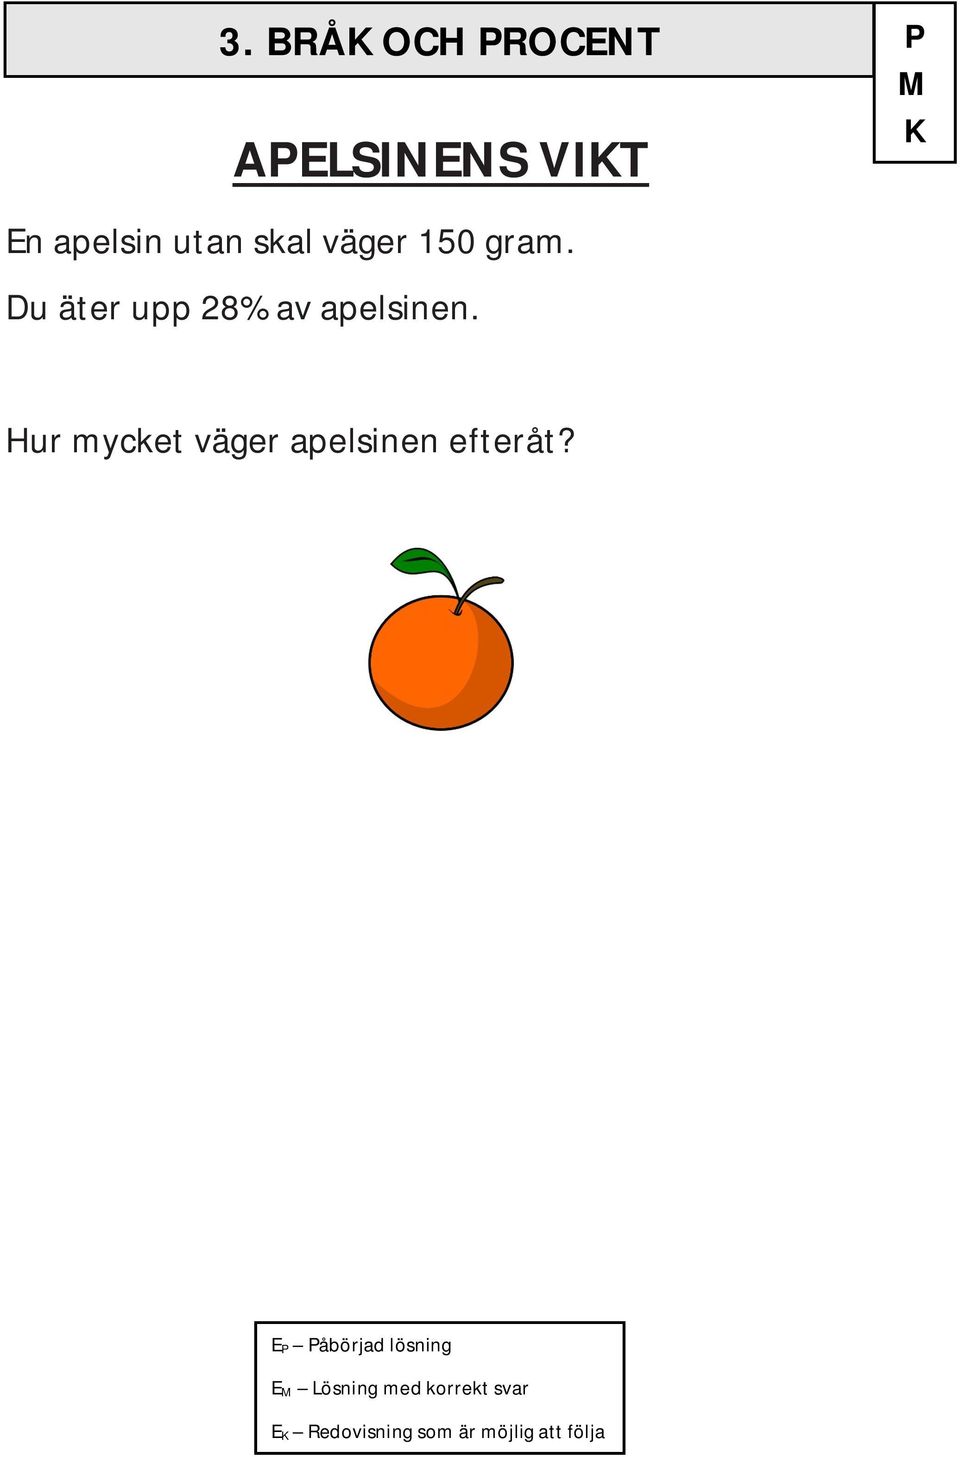 Hur mycket väger apelsinen efteråt?